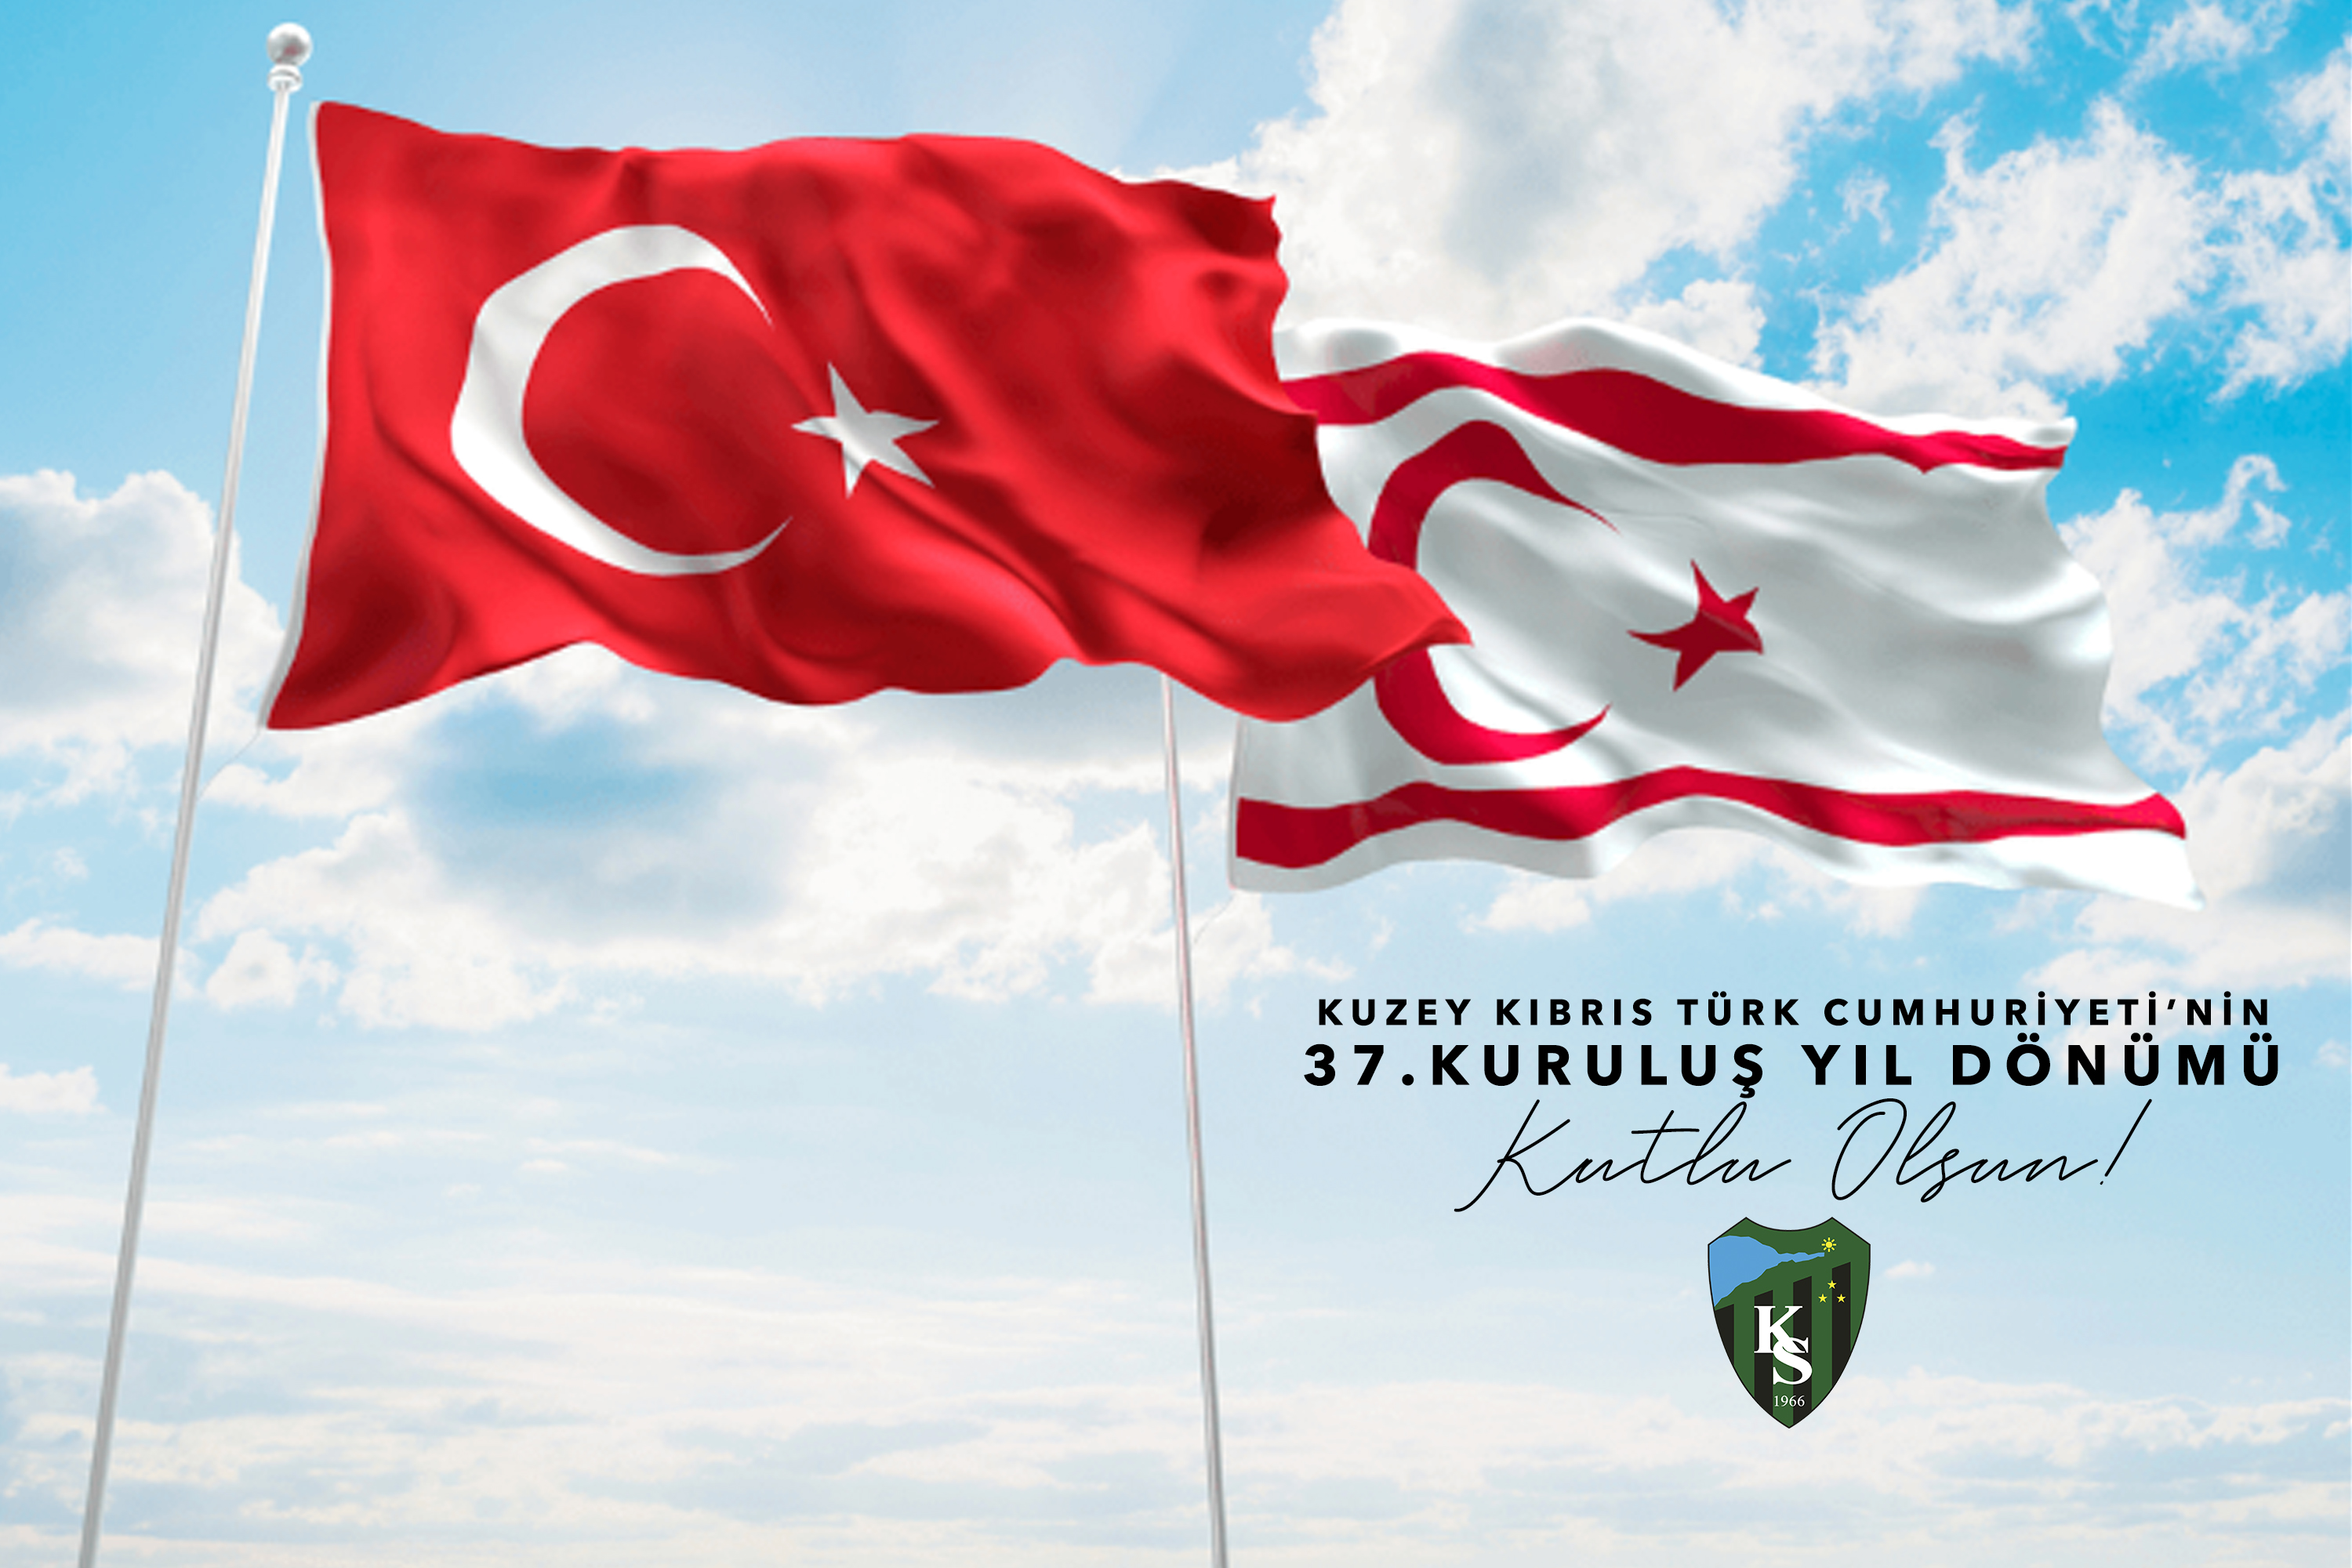 Kuzey Kıbrıs Türk Cumhuriyeti'nin kuruluş yıl dönümü kutlu olsun.